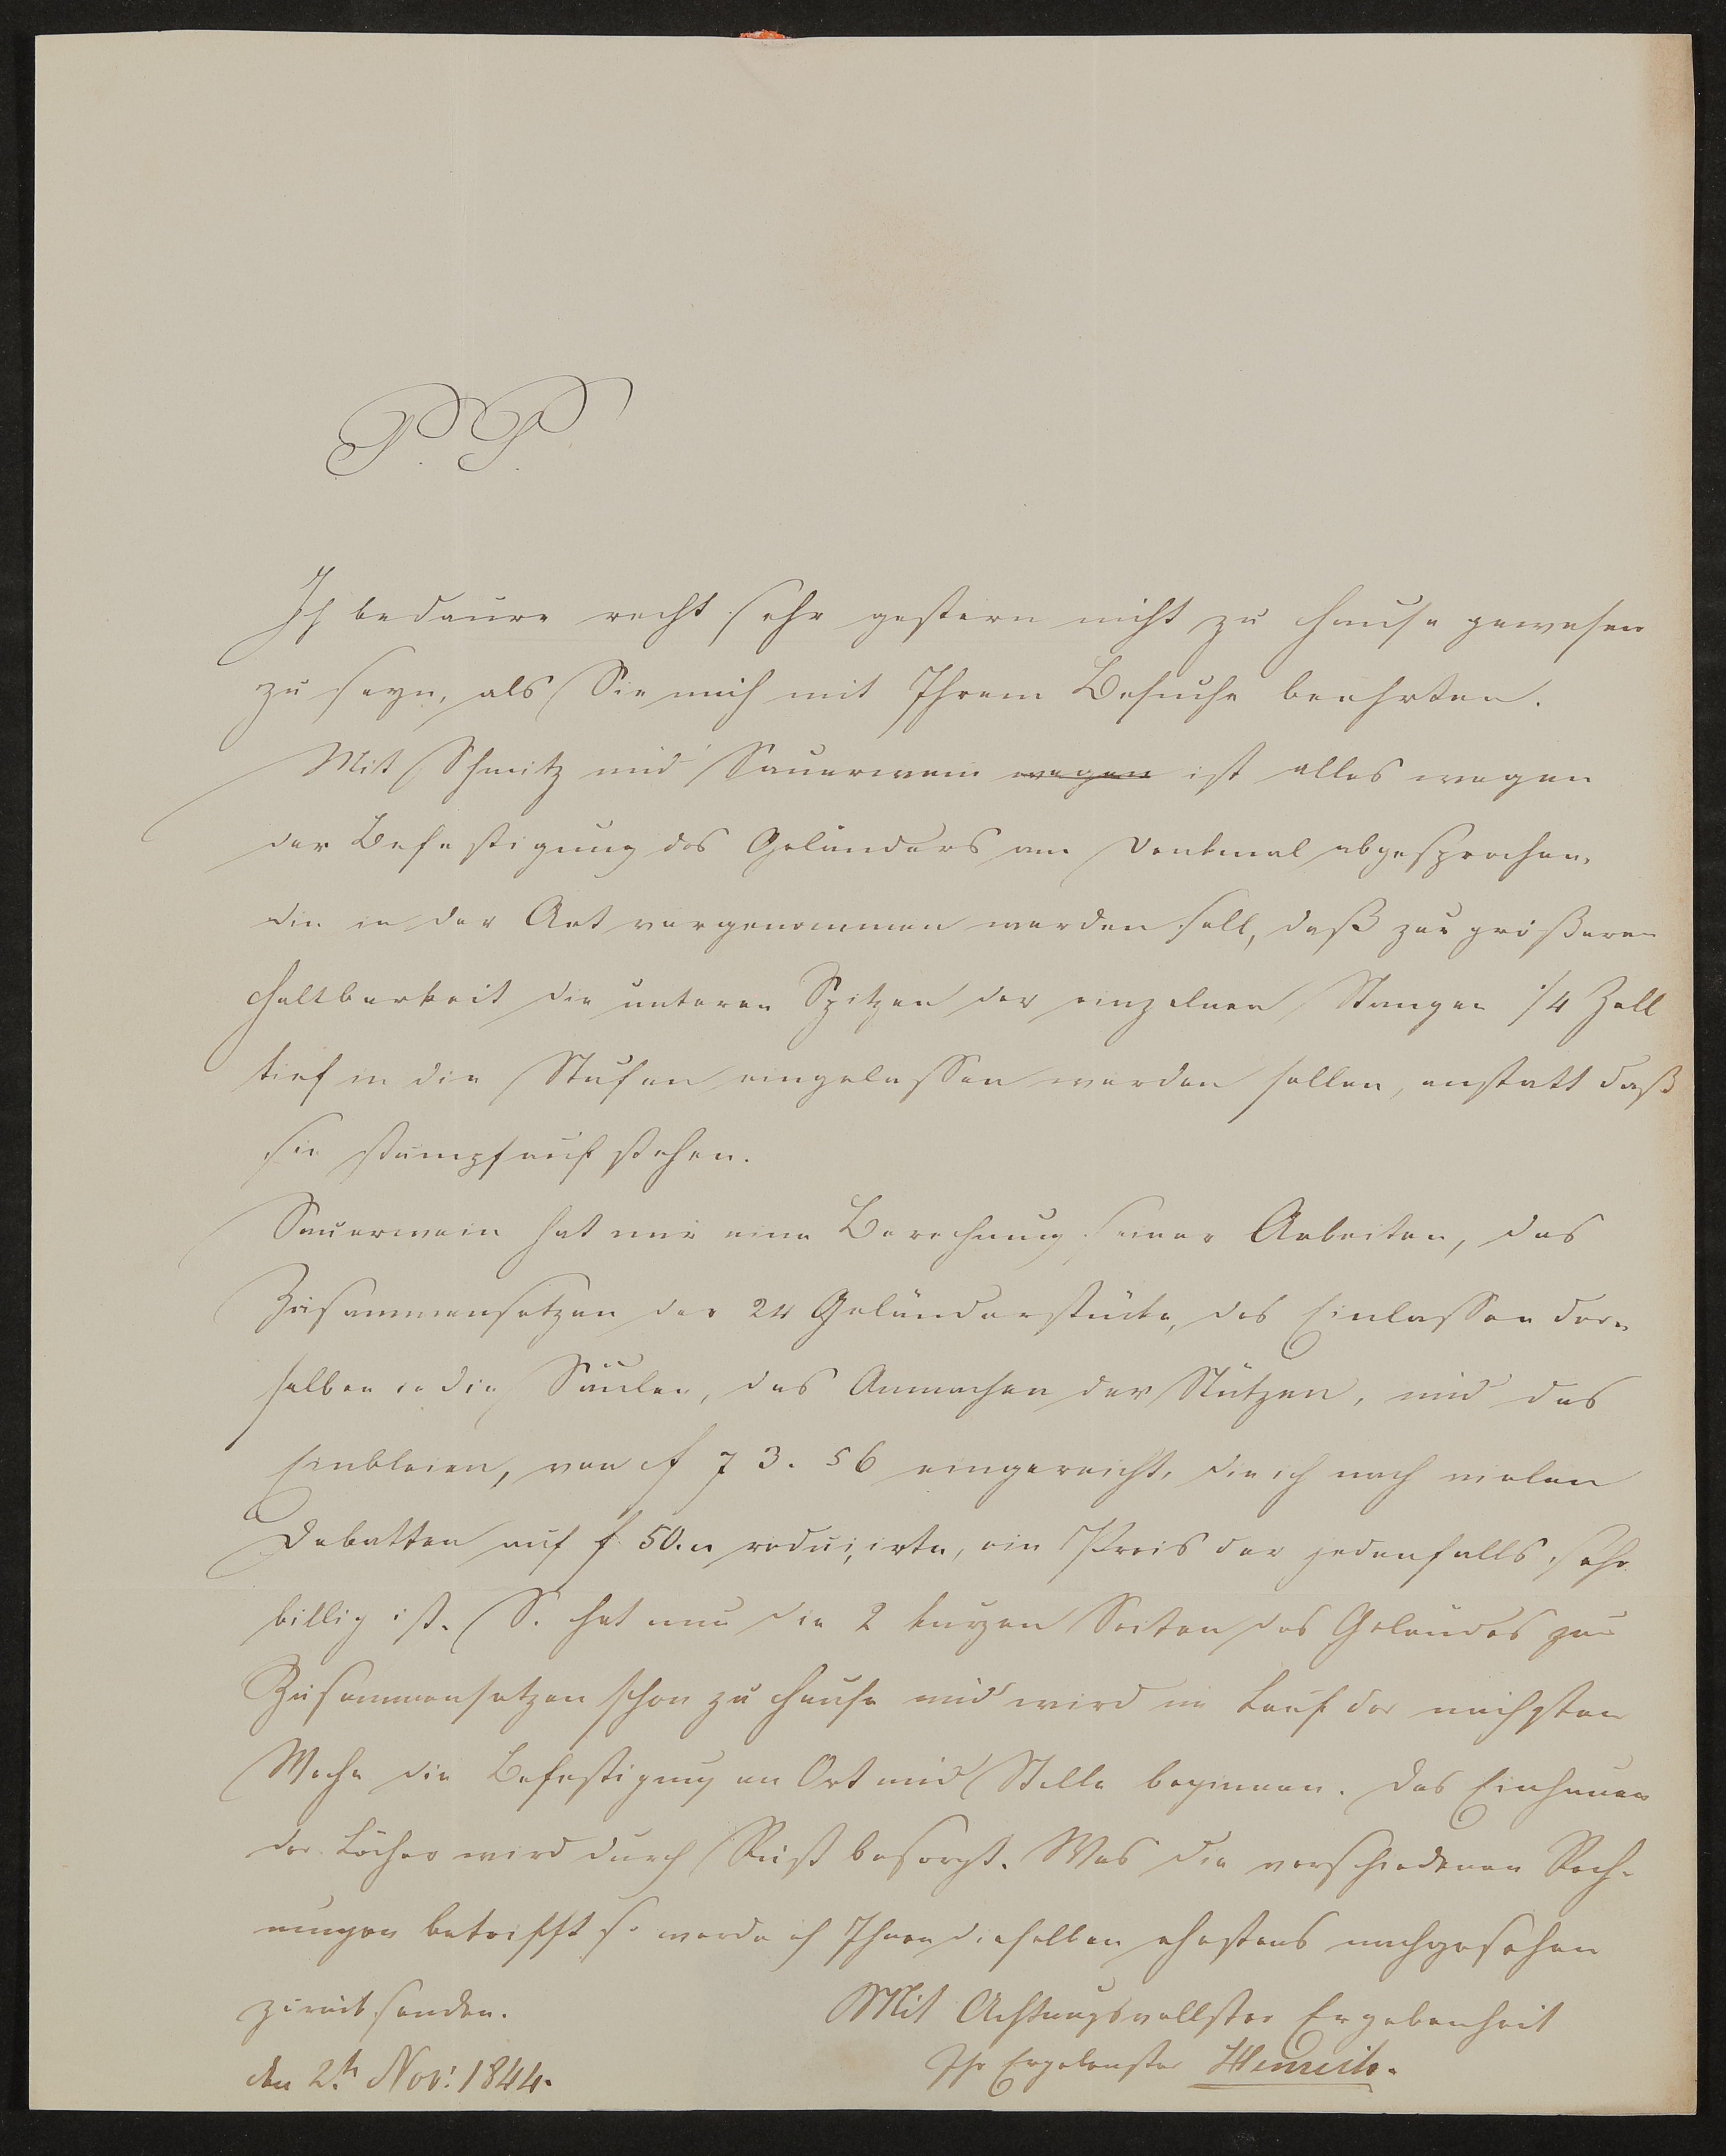 Brief von Carl Friedrich Henrich an Friedrich John vom 02.11.1844 (Freies Deutsches Hochstift / Frankfurter Goethe-Museum Public Domain Mark)